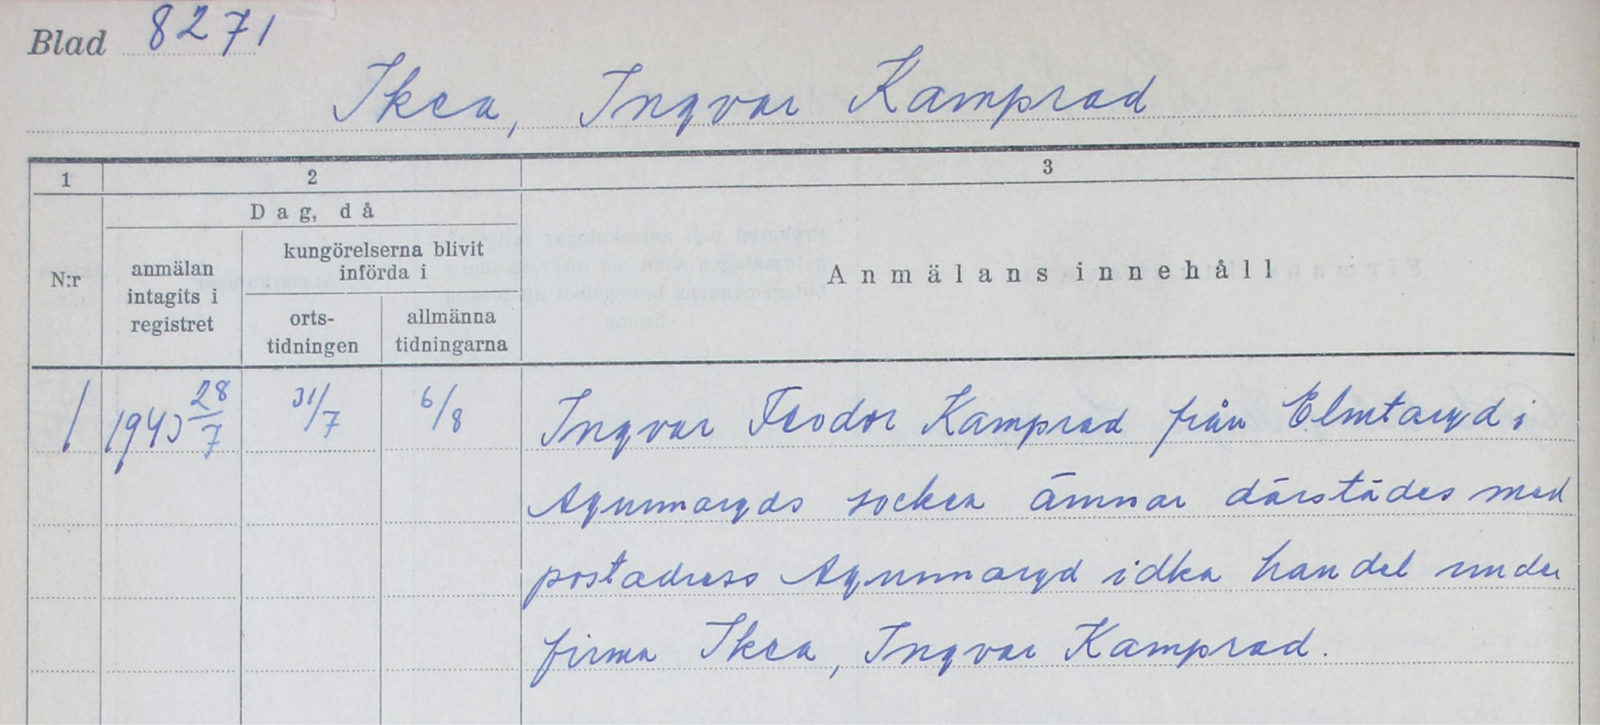 Mit blauer Tinte ausgefülltes Formular, Ingvar Kamprad beantragt die Gründung von Ikéa in Elmtaryd, Agunnaryd, 1940.